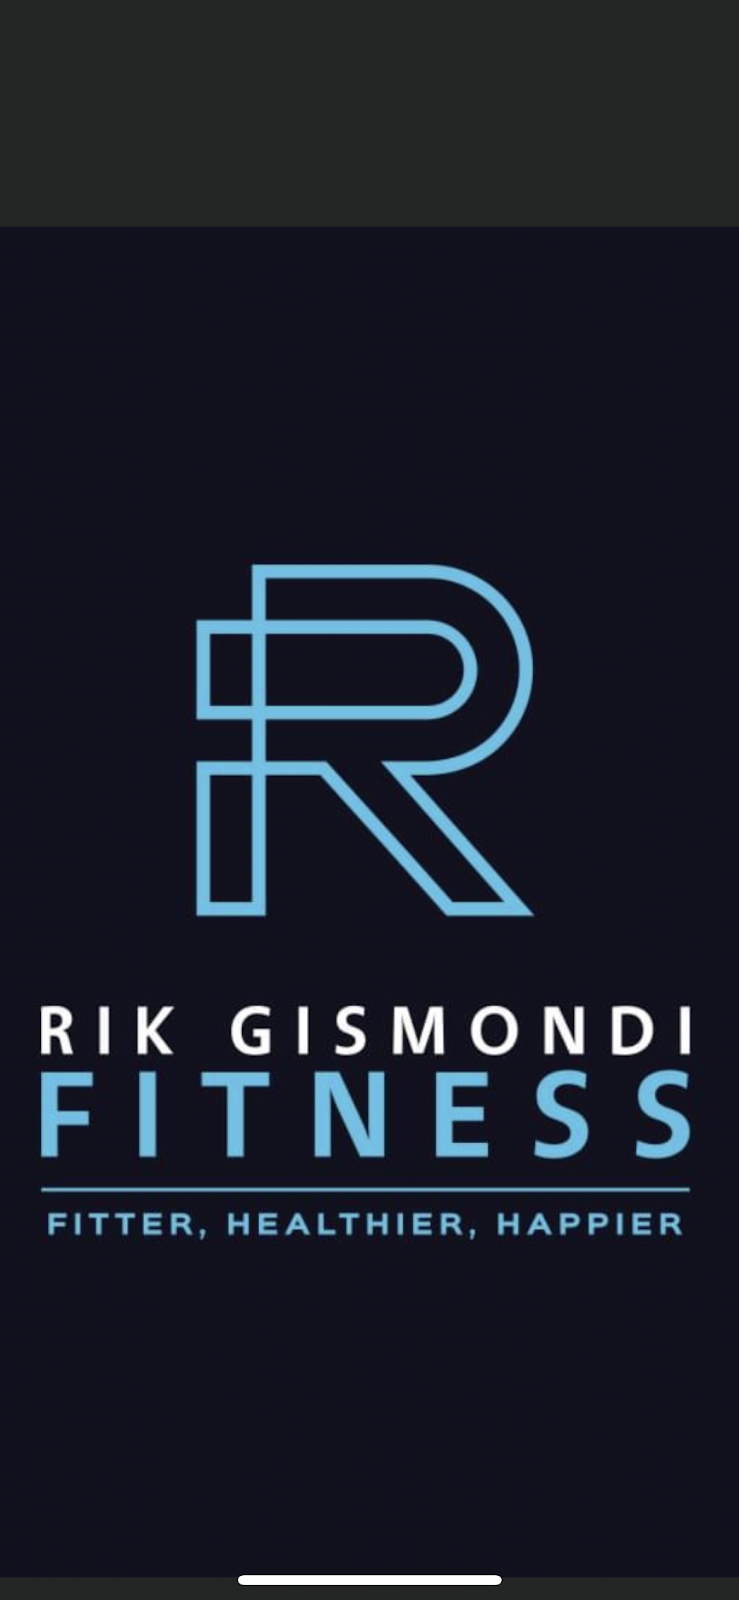 Rik Gismondi Fitness | Jindalee Blvd, Jindalee WA 6036, Australia | Phone: 0410 070 094